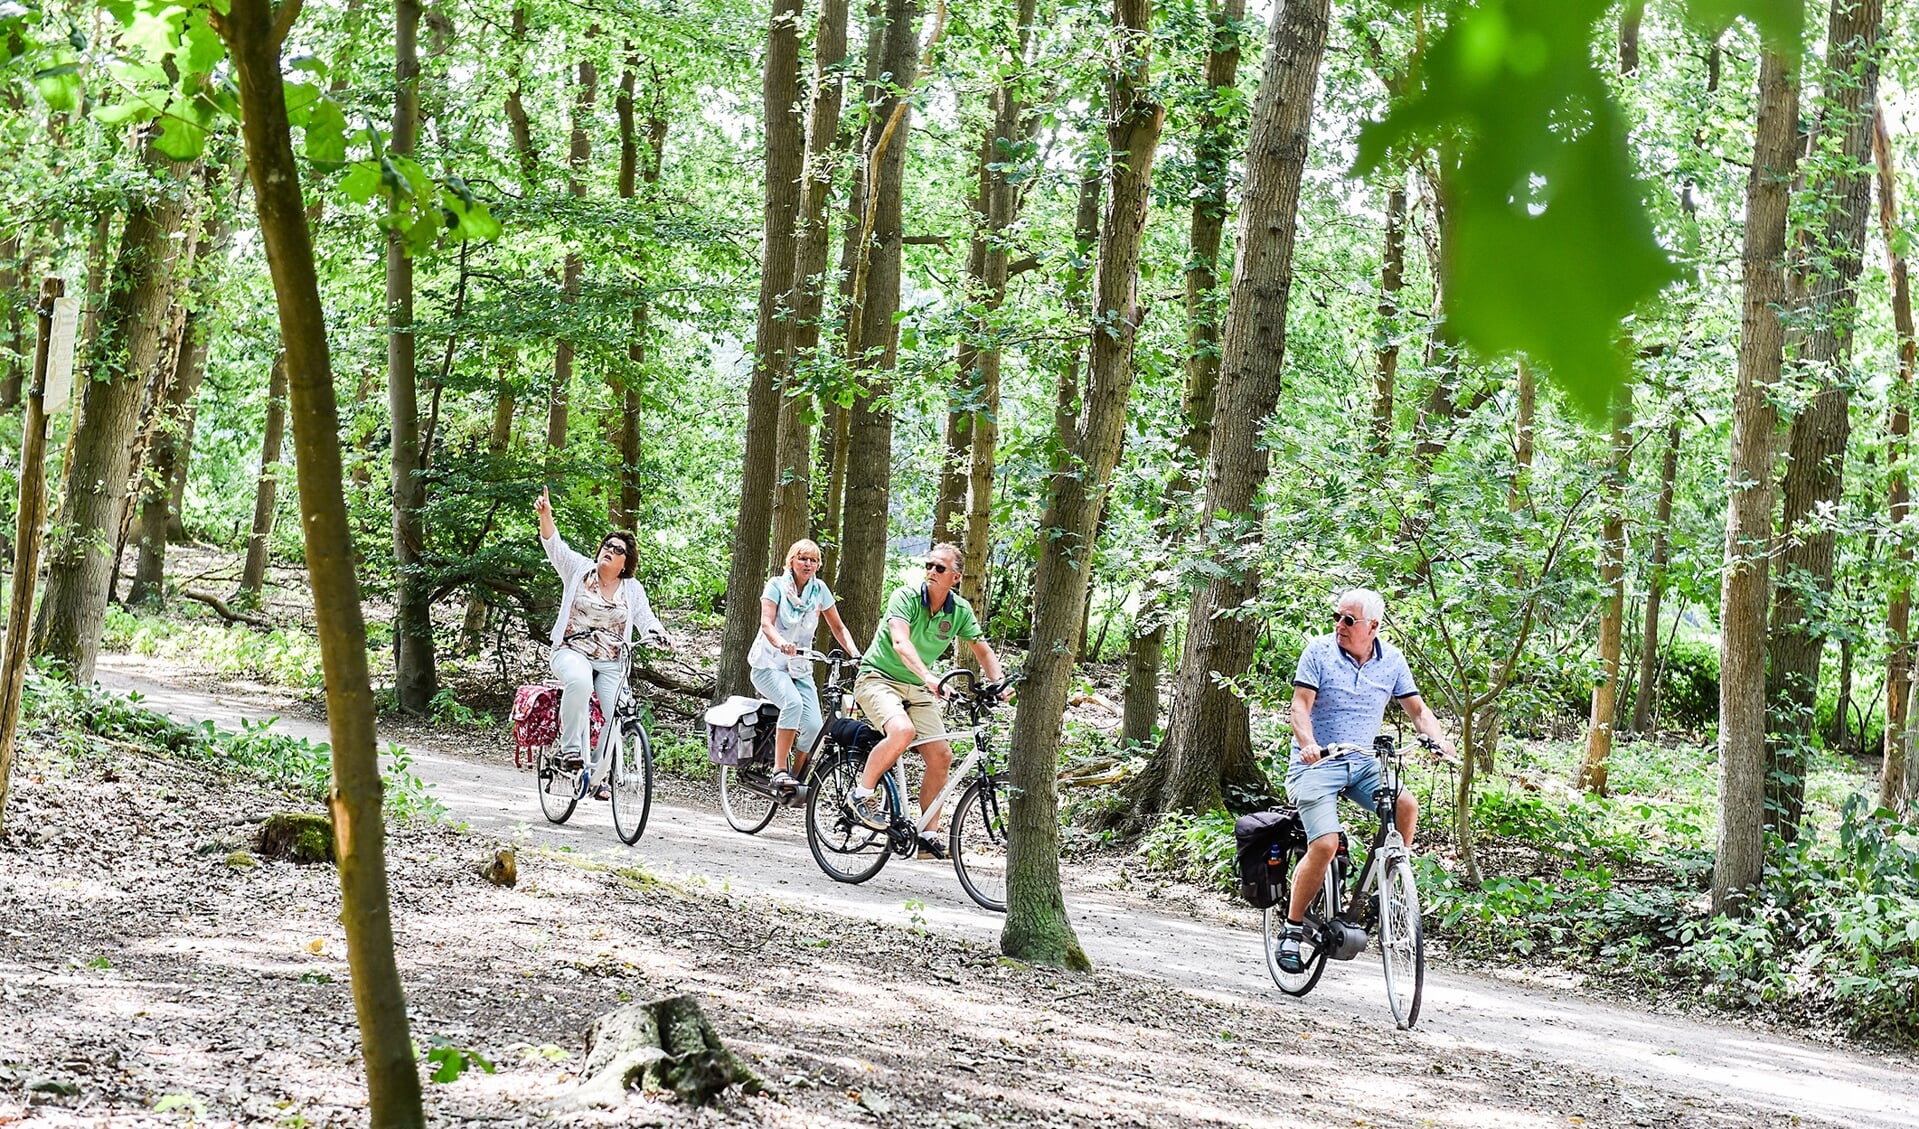 Regionaal Bureau voor Toerisme (RBT) Heuvelrug & Vallei promoot fietsen op de Heuvelrug tijdens meimaand fietsmaand.